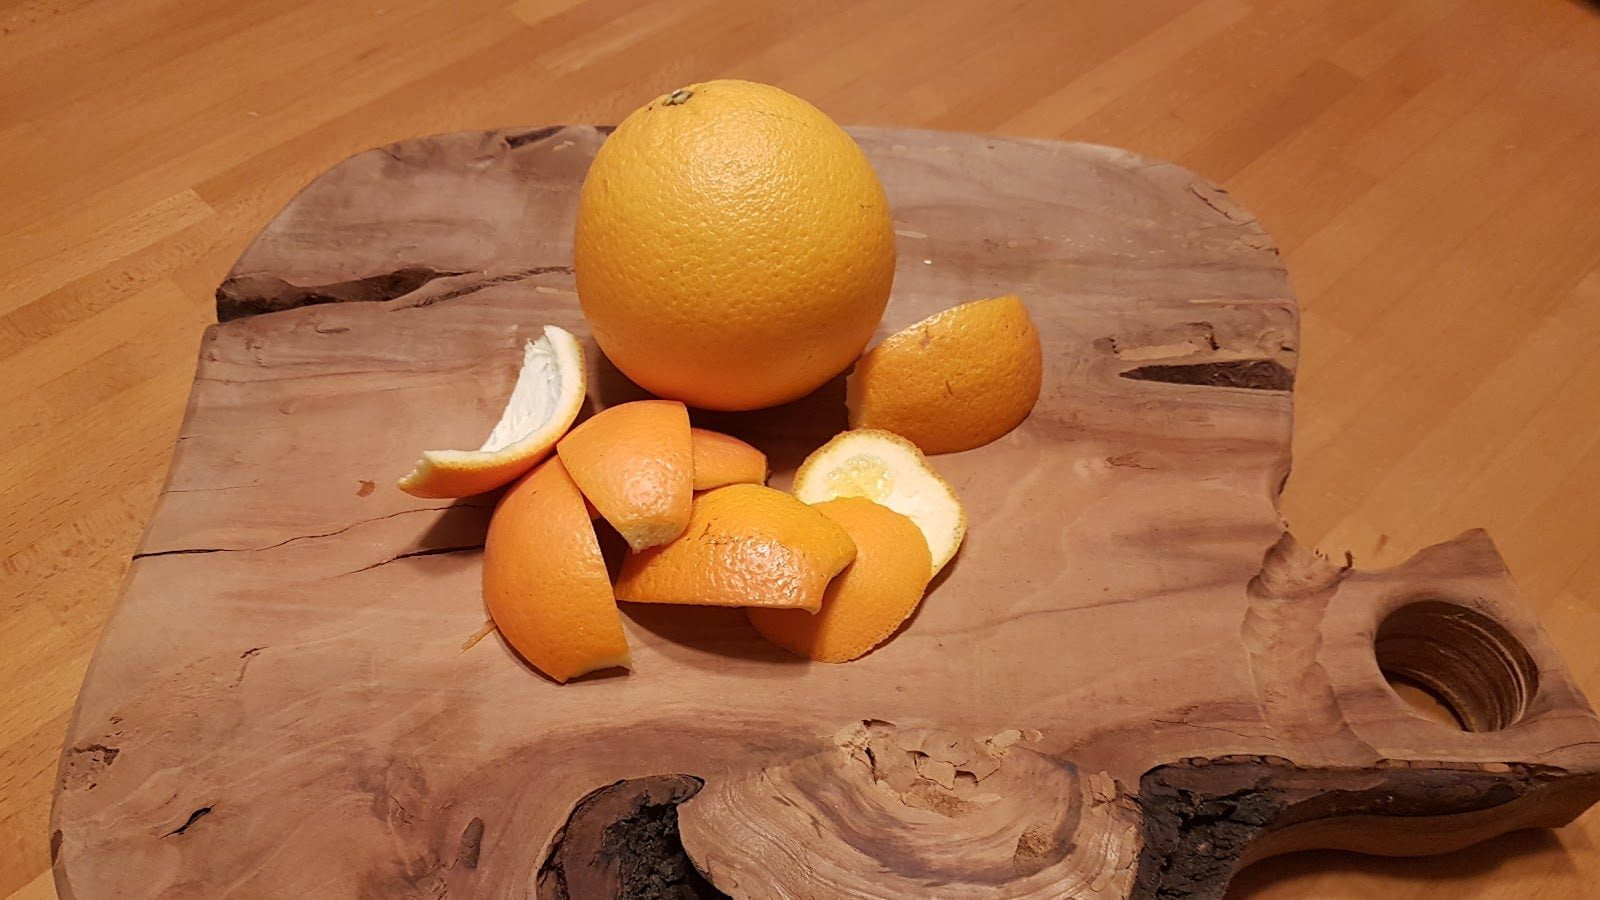 Scorze di arancia candite, o di qualsiasi agrume vogliate